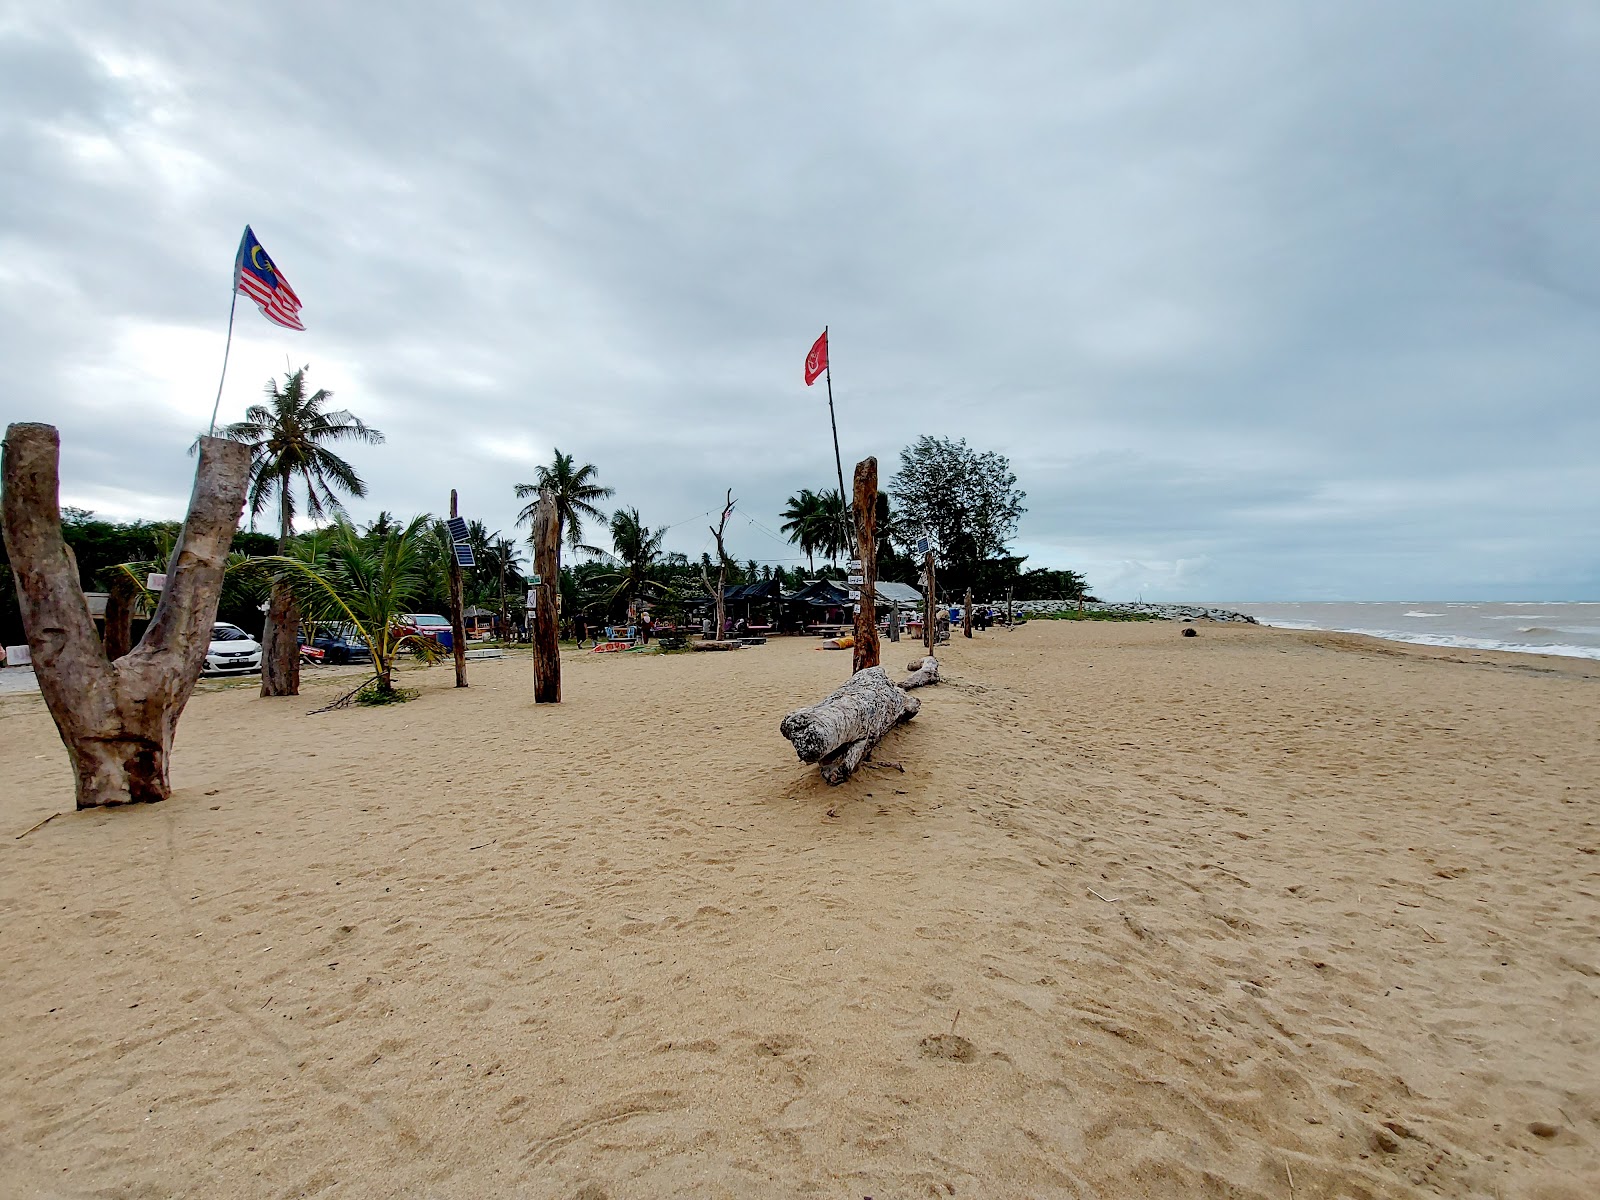 Nusuk Beach'in fotoğrafı geniş plaj ile birlikte